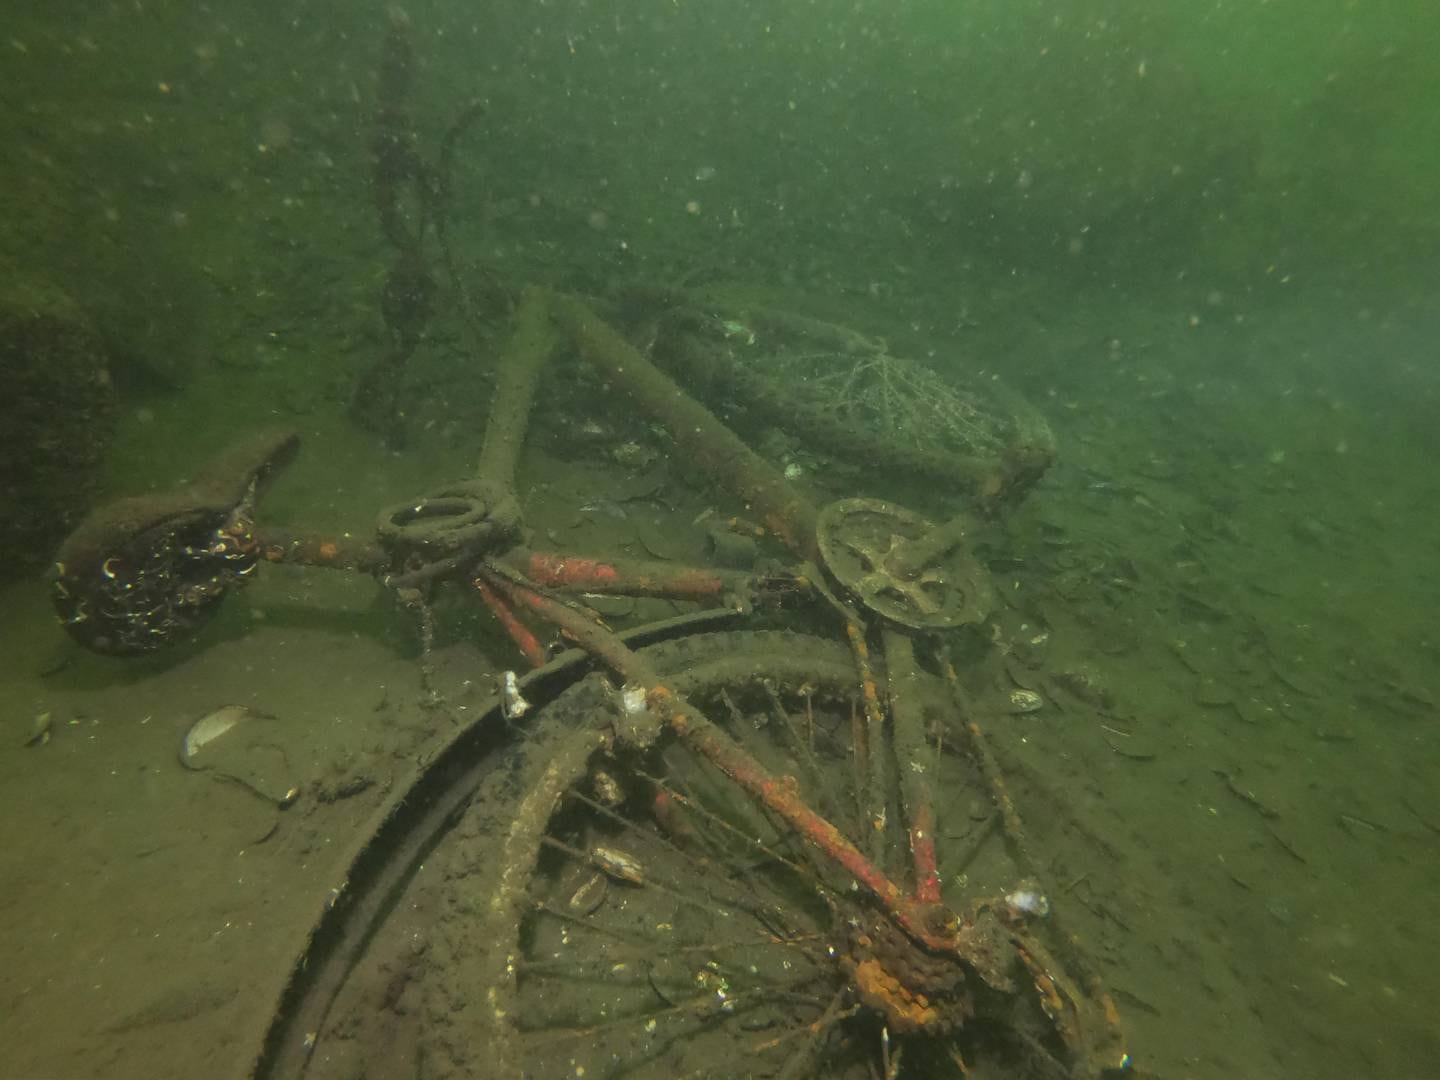 Bilde tatt 30. september i Mossesundet. På dette dykket ble det blant annet funnet en sykkel.